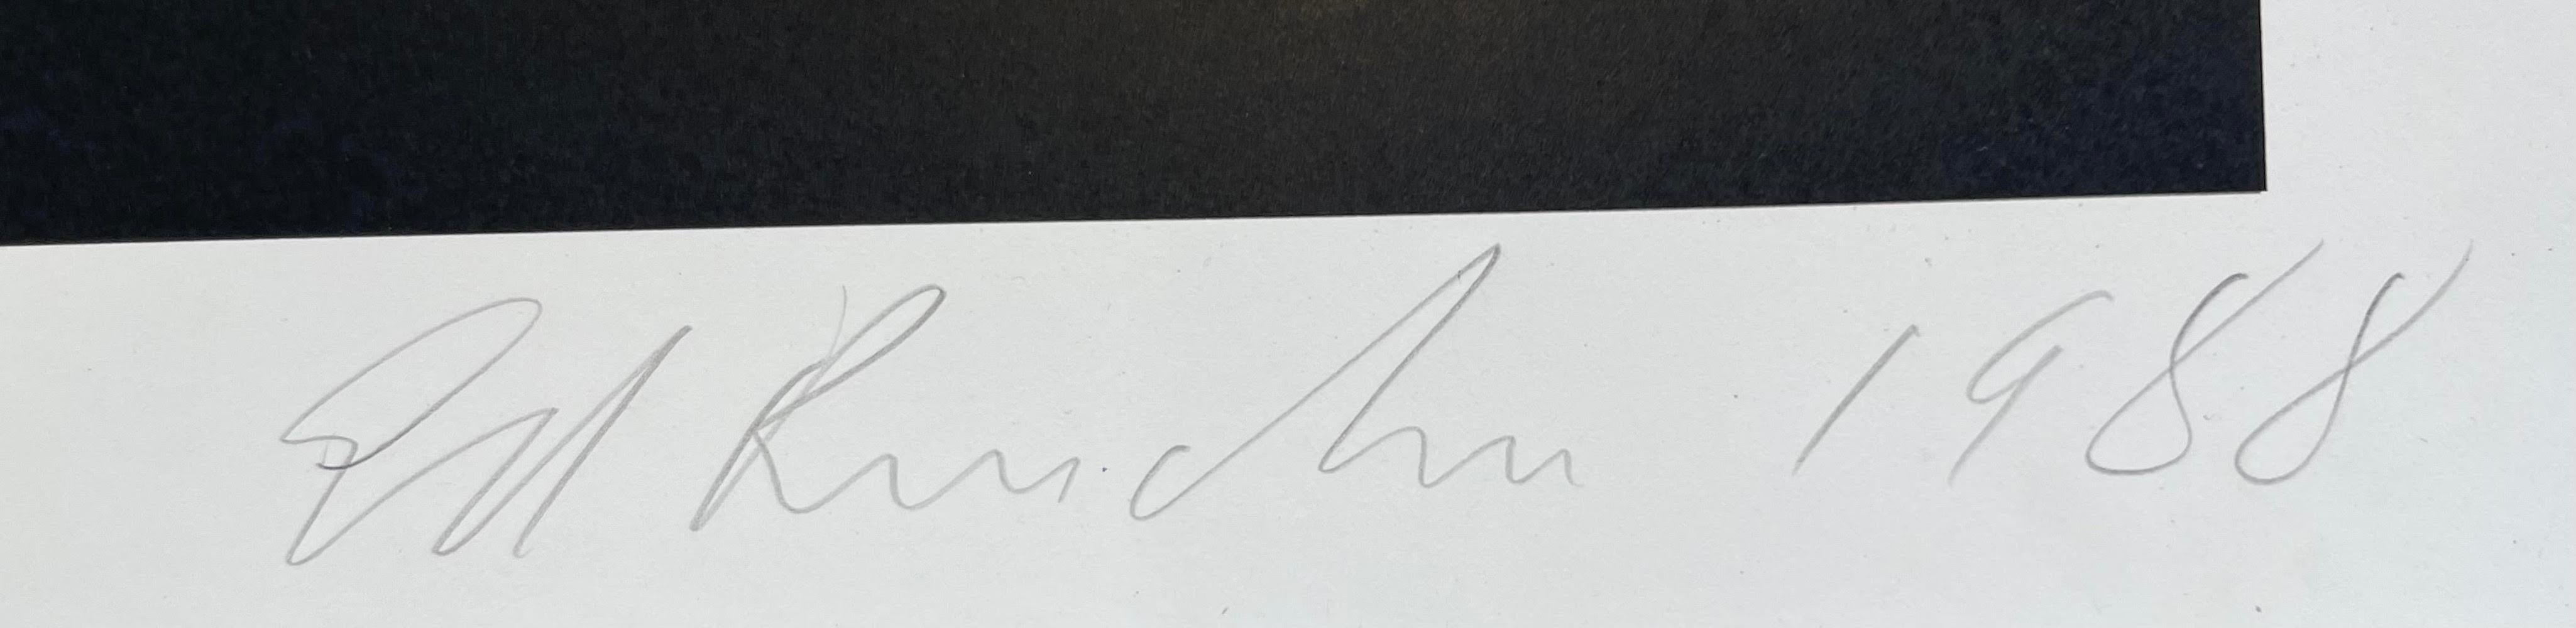 Ed Ruscha
Absolut Ruscha, 1988
Lithographie offset en couleurs sur papier vélin
Signée et datée au crayon par Ed Ruscha en bas à droite sur le devant.
Édition limitée à 200 exemplaires (non numérotés)
45.25 x 33 pouces
Non encadré
Cette rare